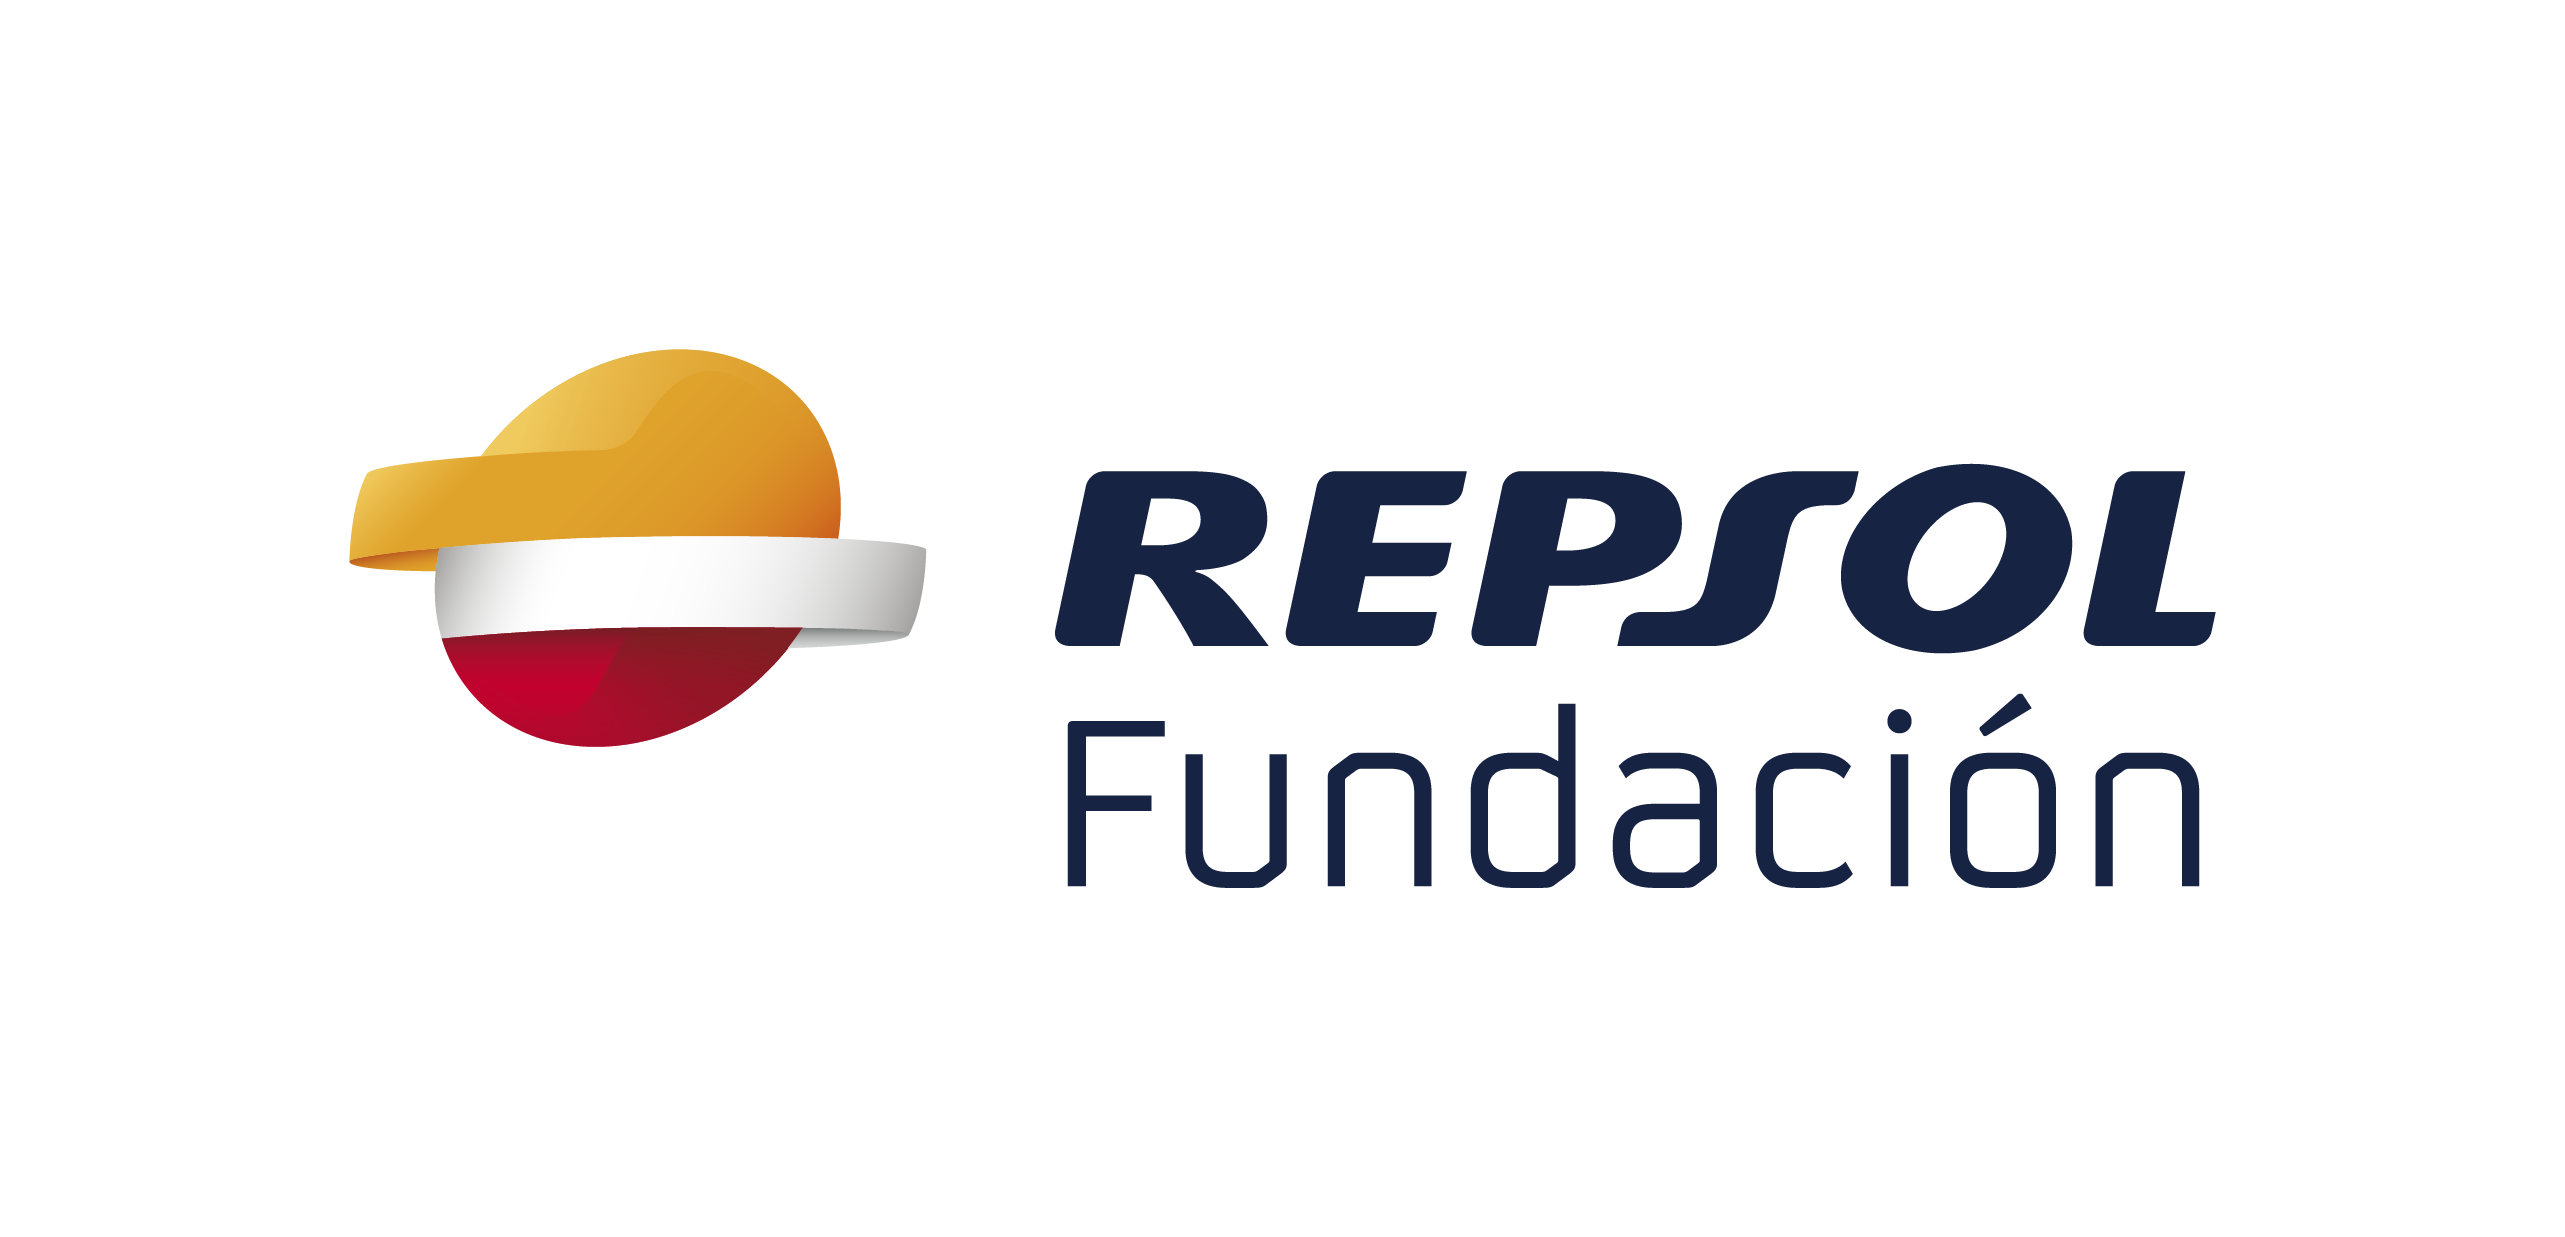 Fundación Repsol